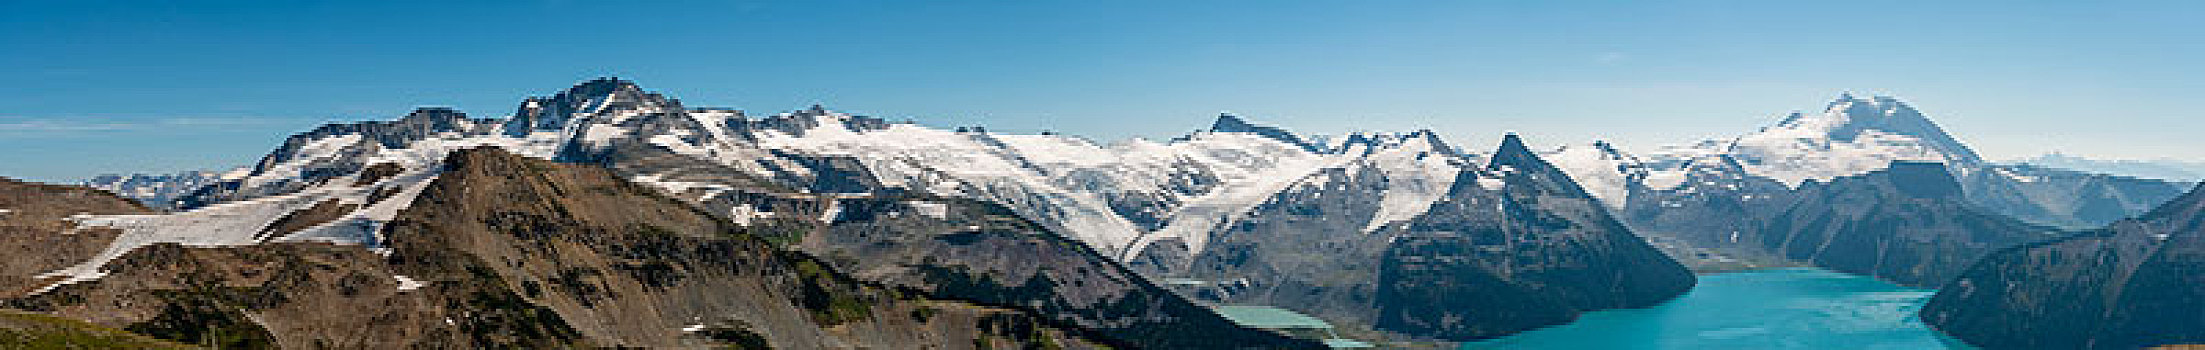 青绿色,结冰,湖,正面,山脉,雪,冰河,山,省立公园,不列颠哥伦比亚省,加拿大,北美